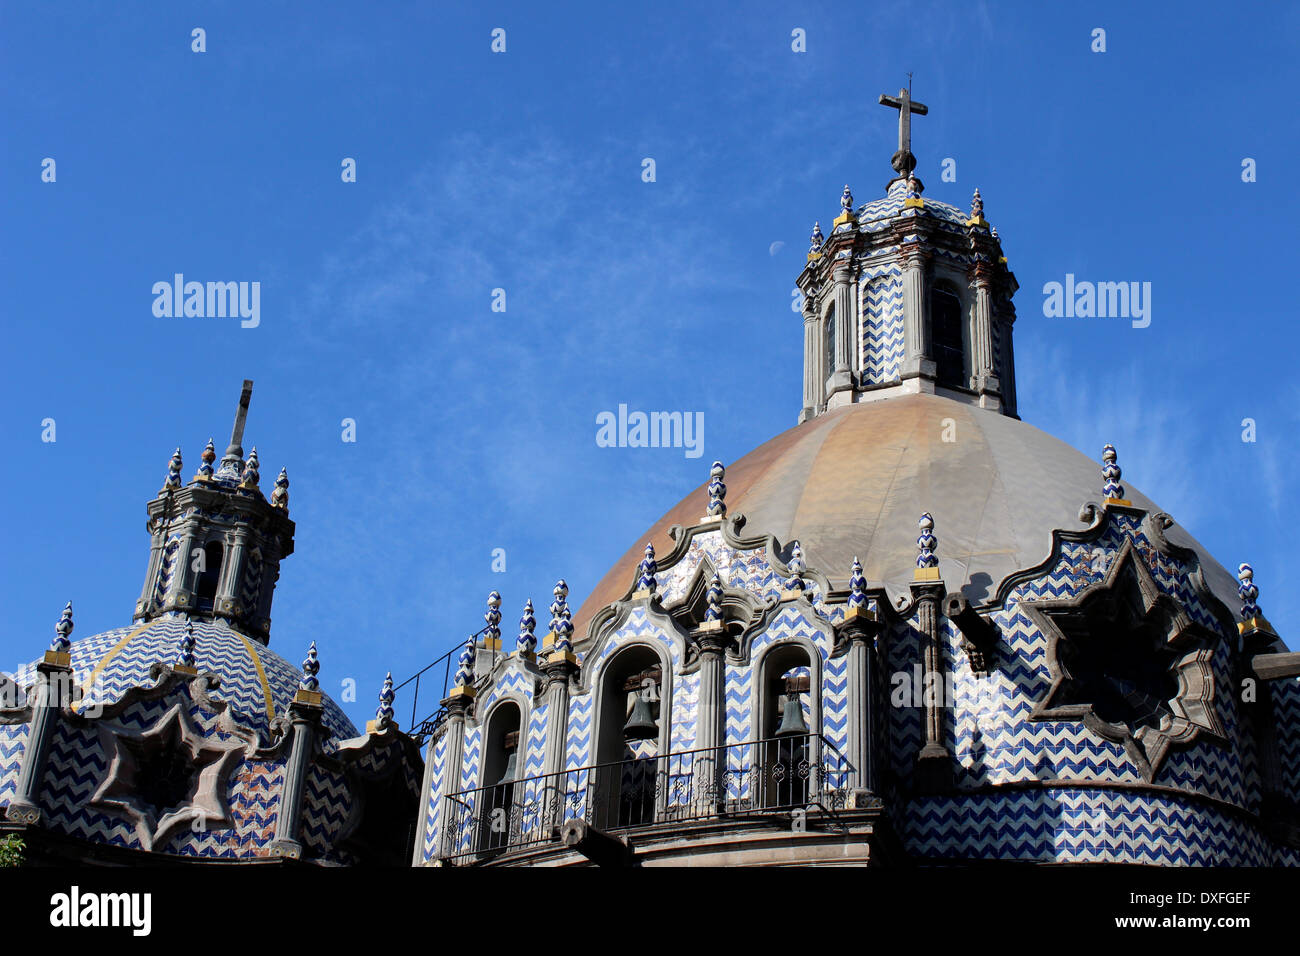 The domes of the Templo del Pocito, Basilica de Guadalupe, Mexico City, Mexico Stock Photo